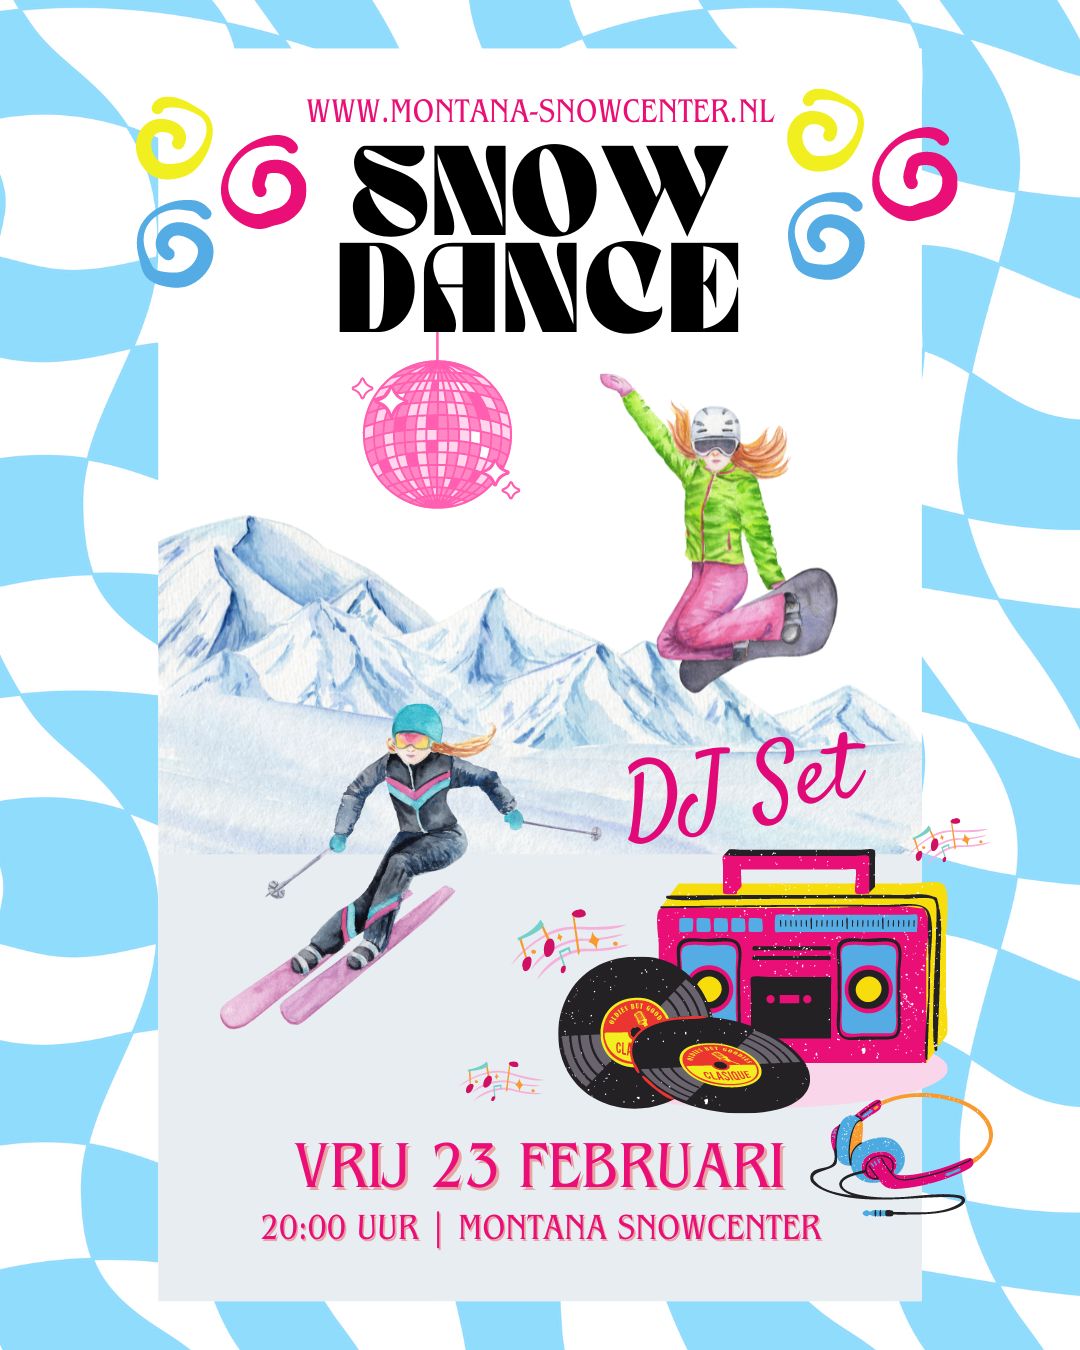 Snow Dance ervaar indoor skiën en snowboarden met live DJ op de piste.